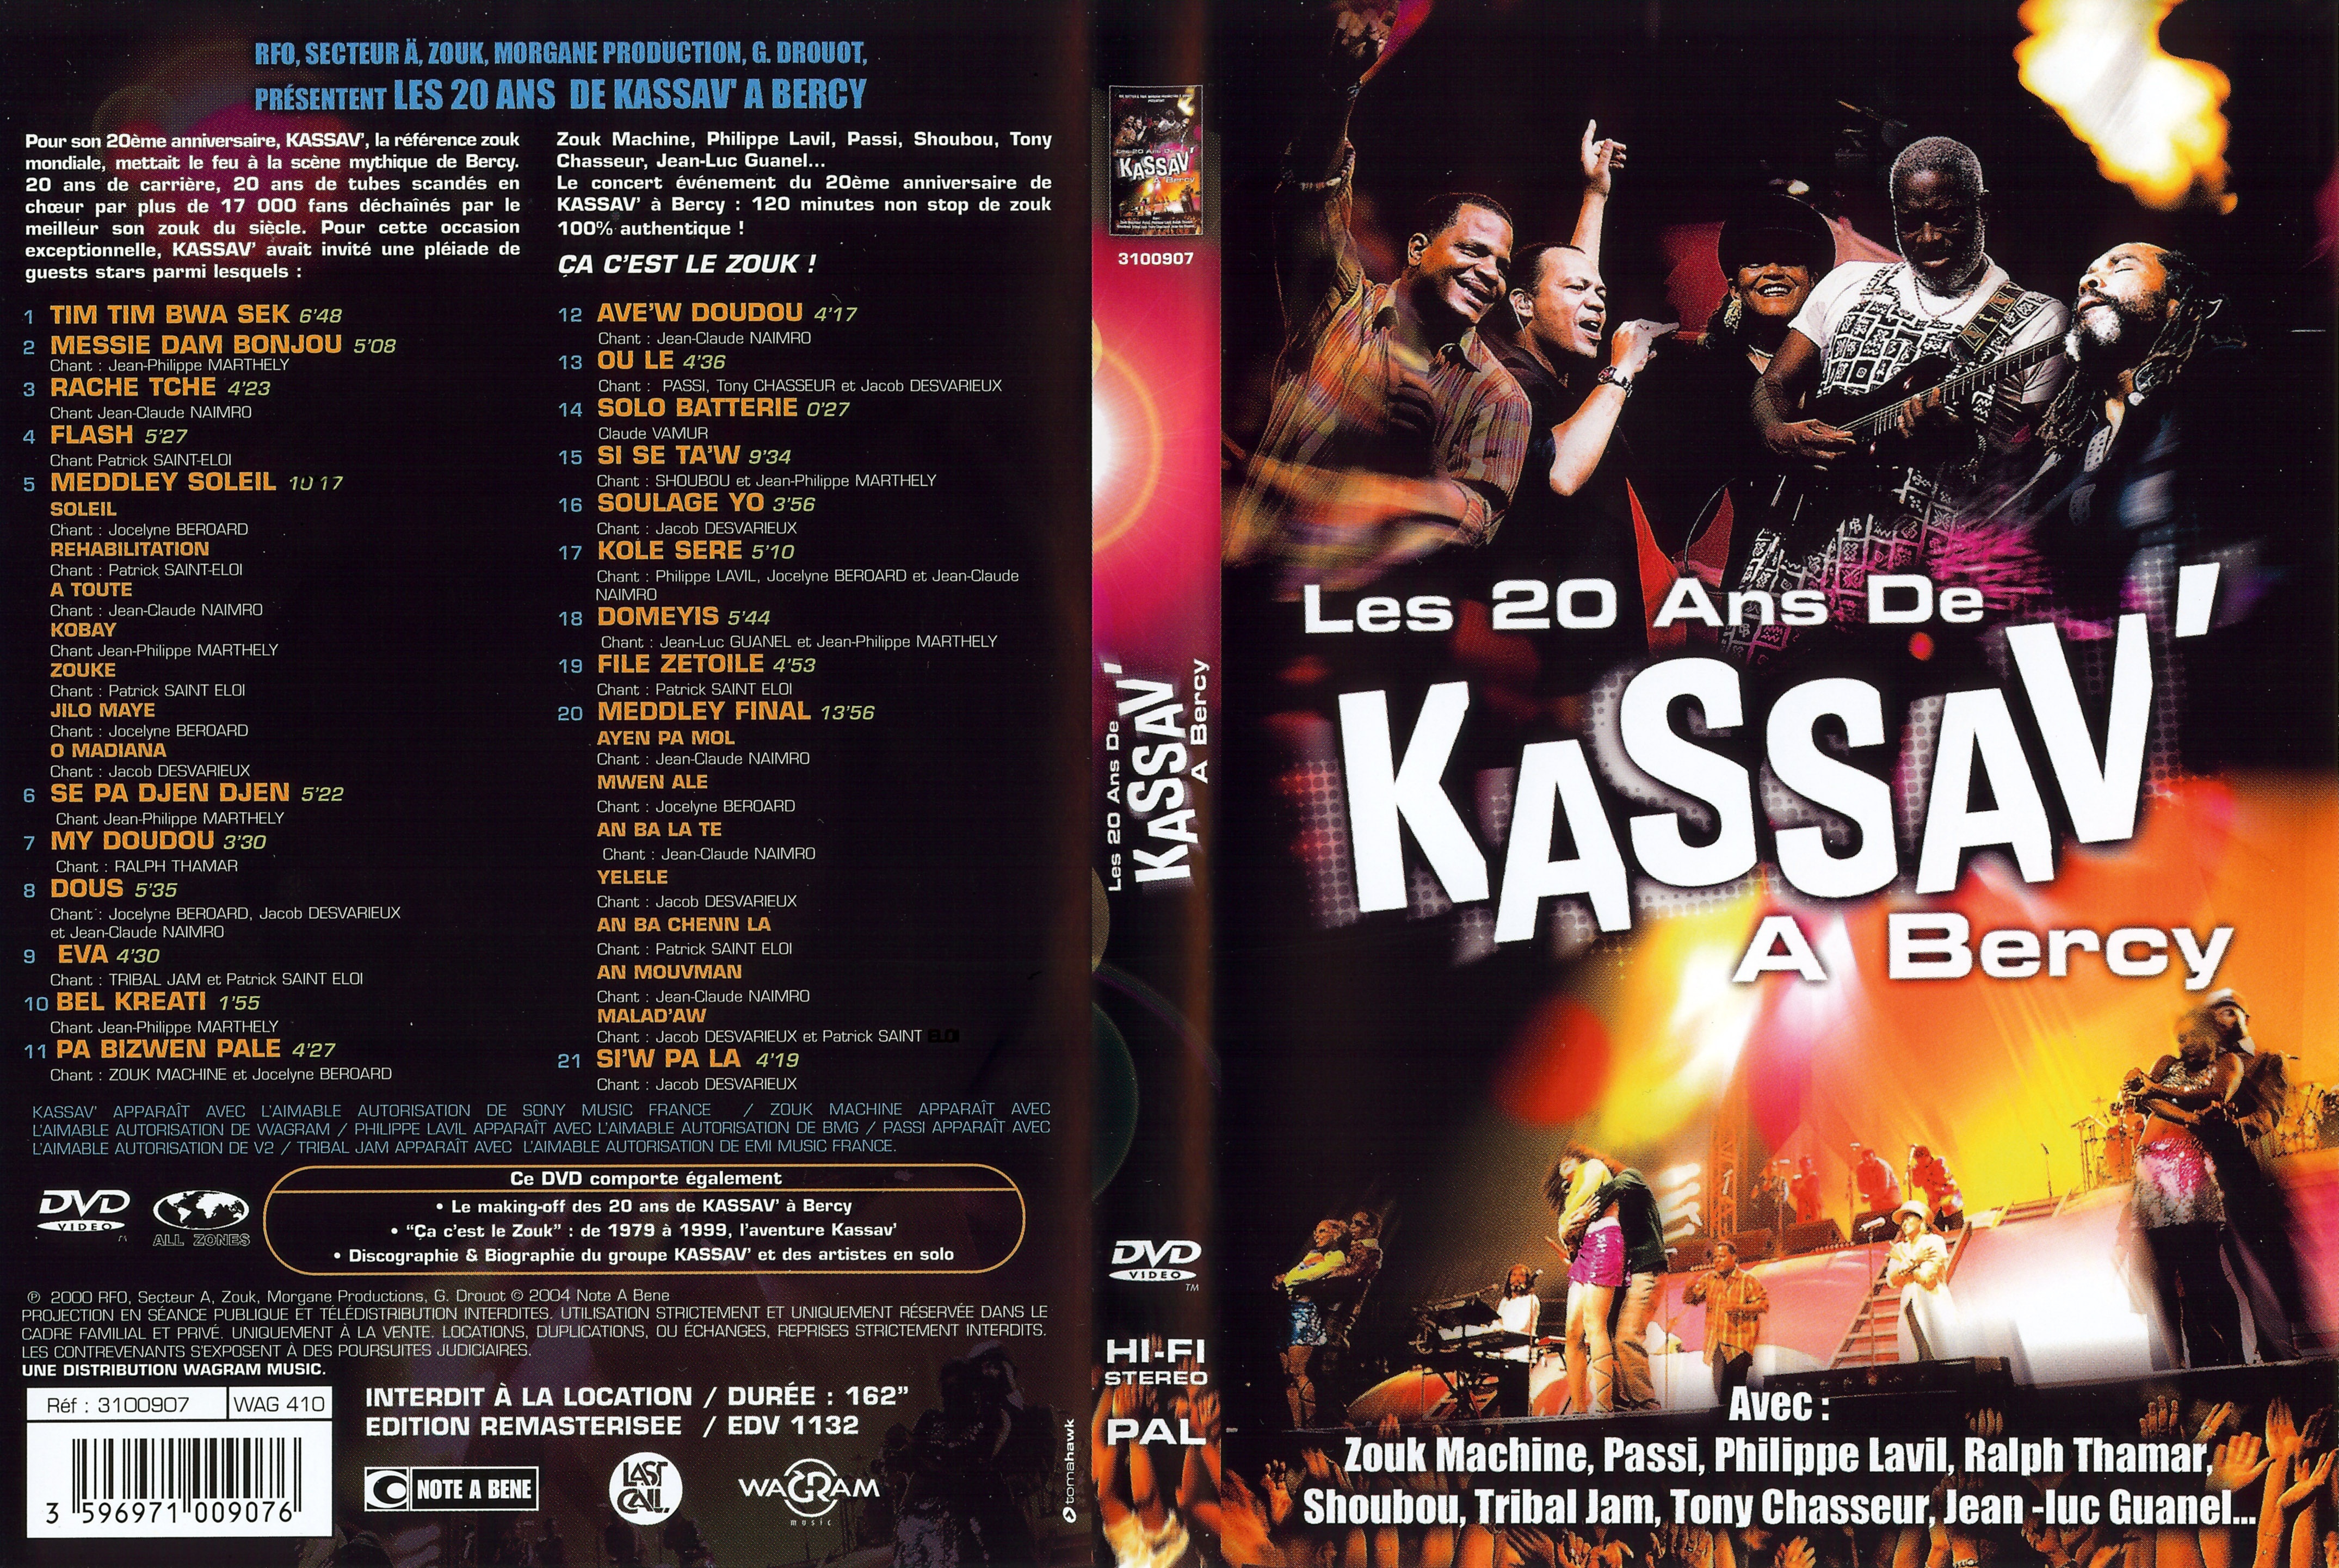 Jaquette DVD Les 20 ans de Kassav  Bercy